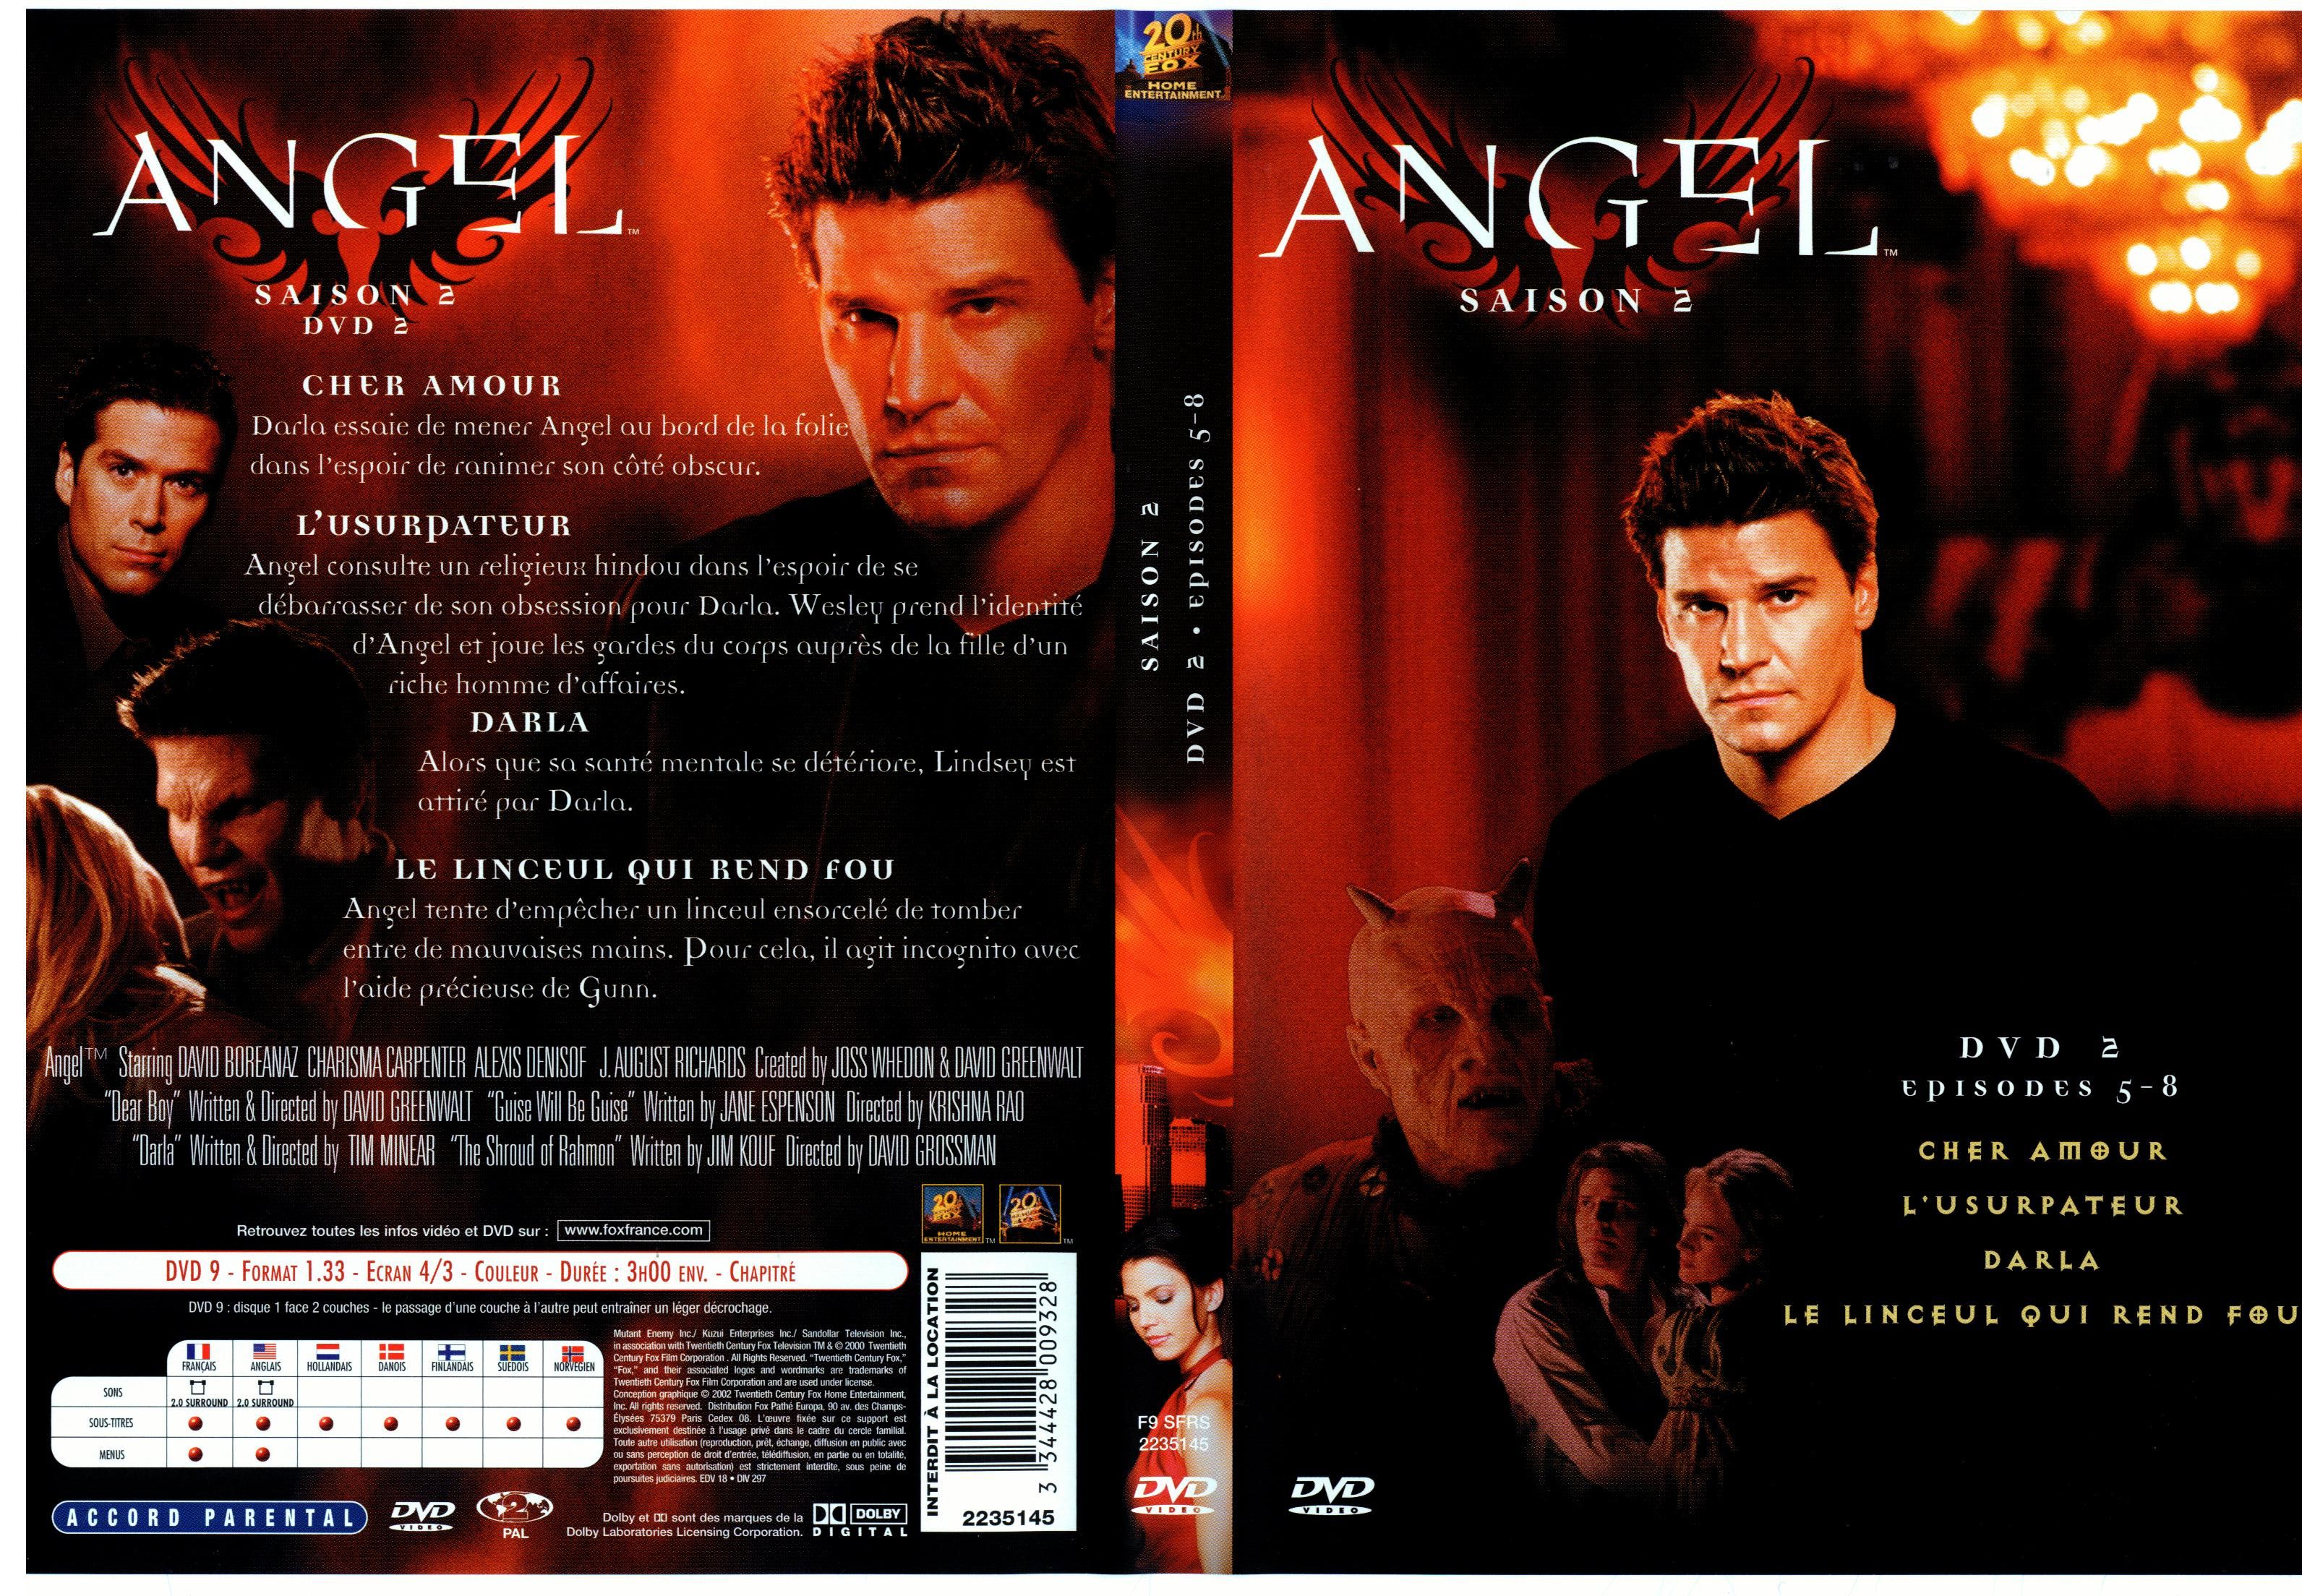 Jaquette DVD Angel Saison 2 dvd 2